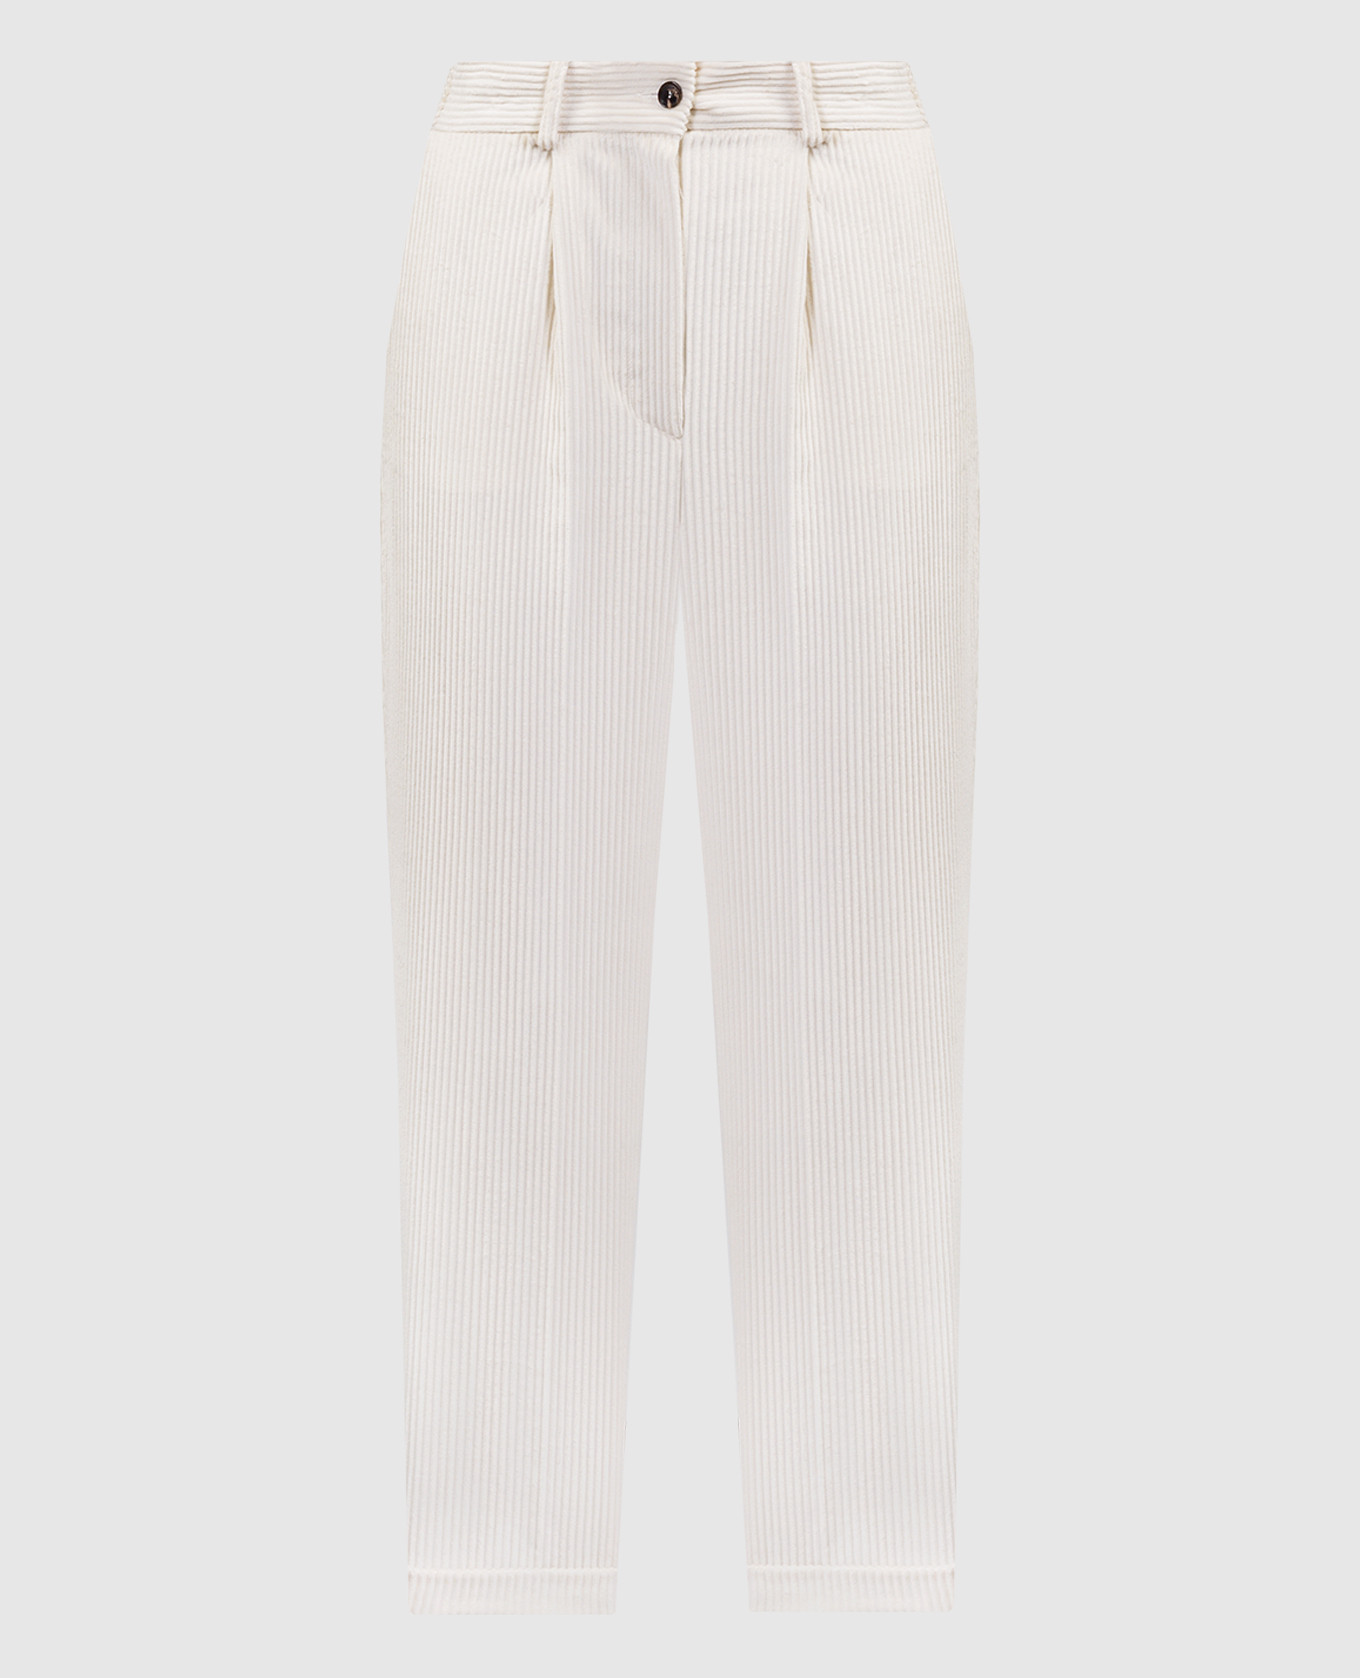 Белые вельветовые брюки